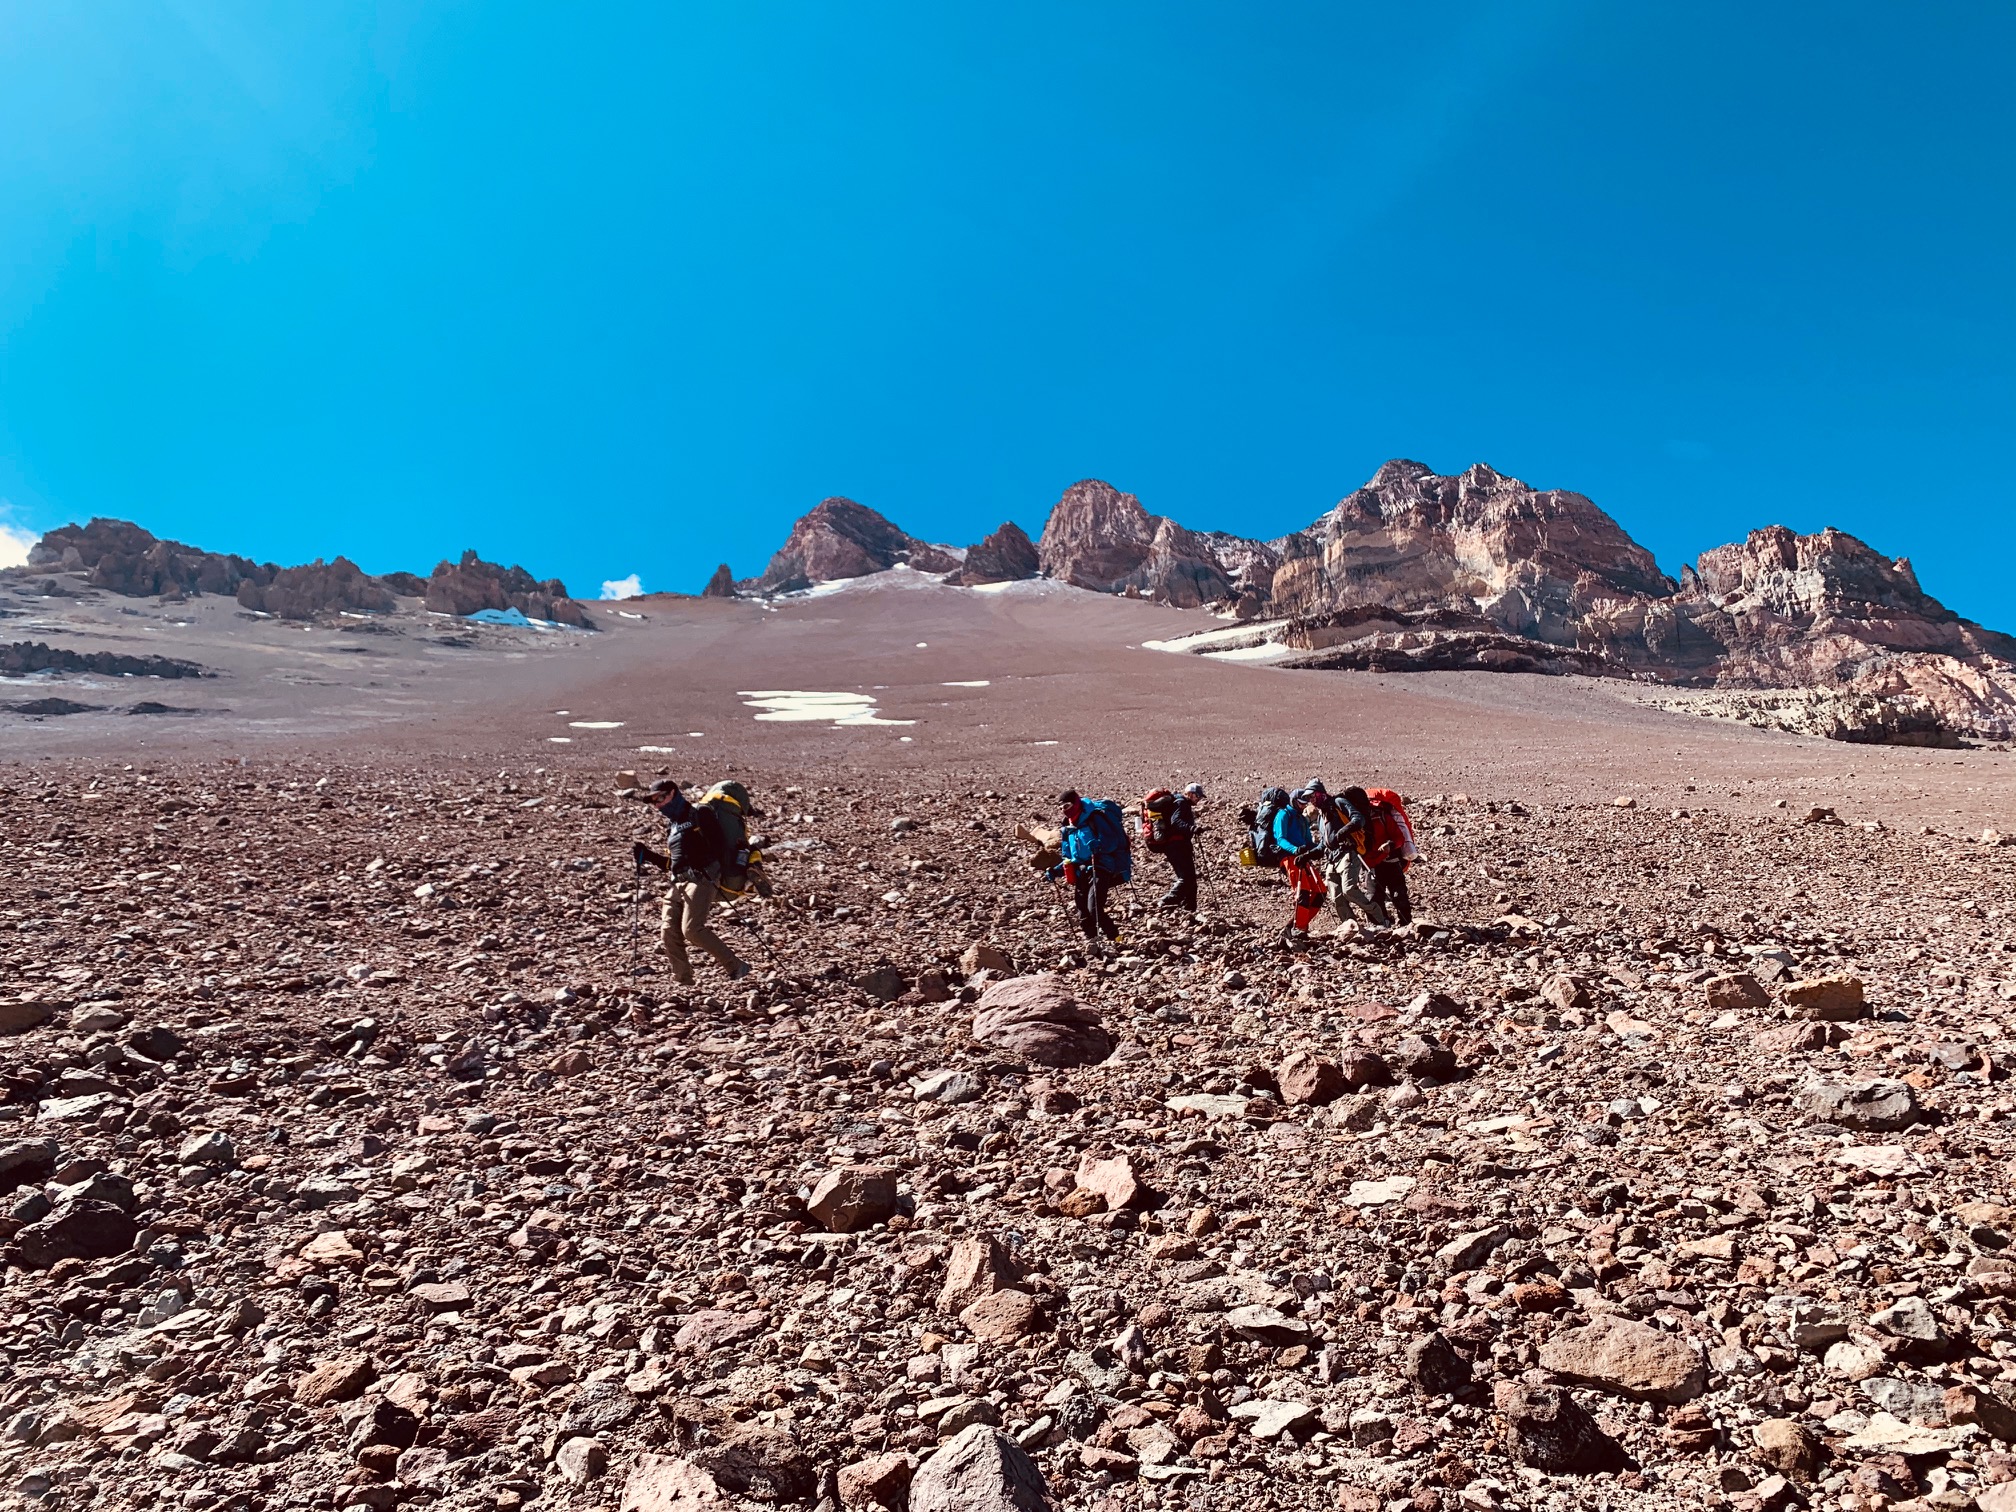 The terrain high on Aconcagua